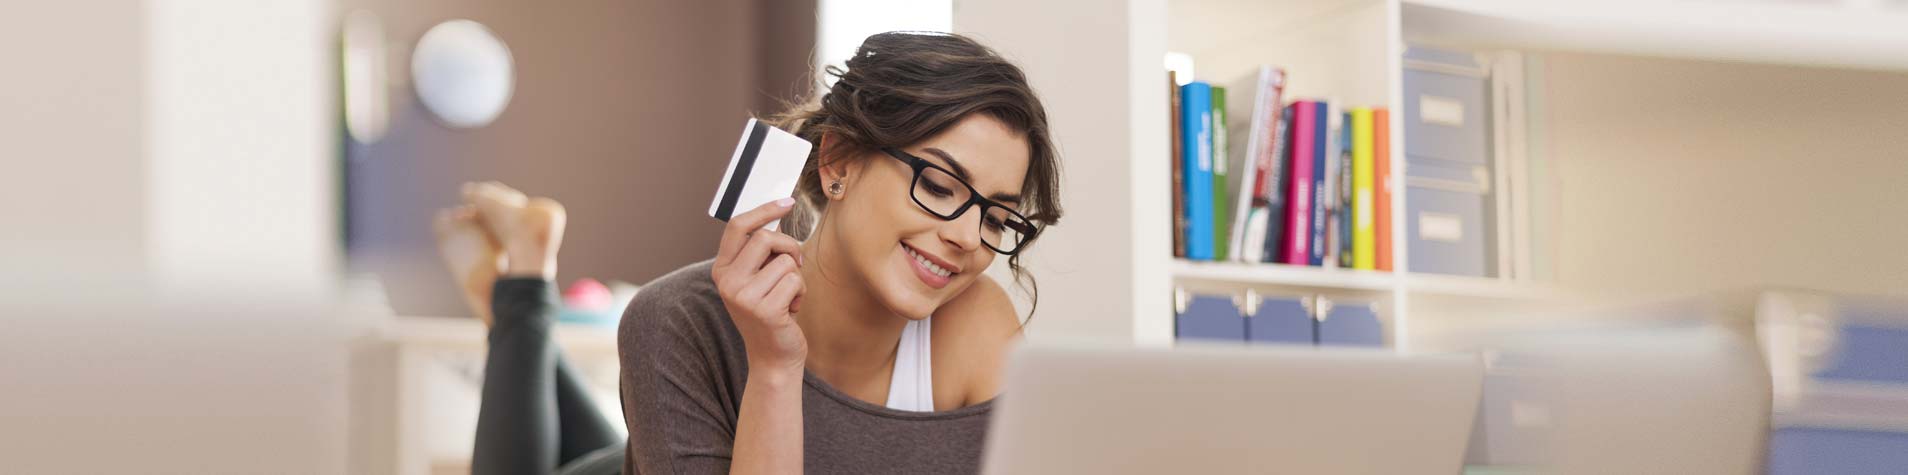 CME Credit Union Debit/ATM Card